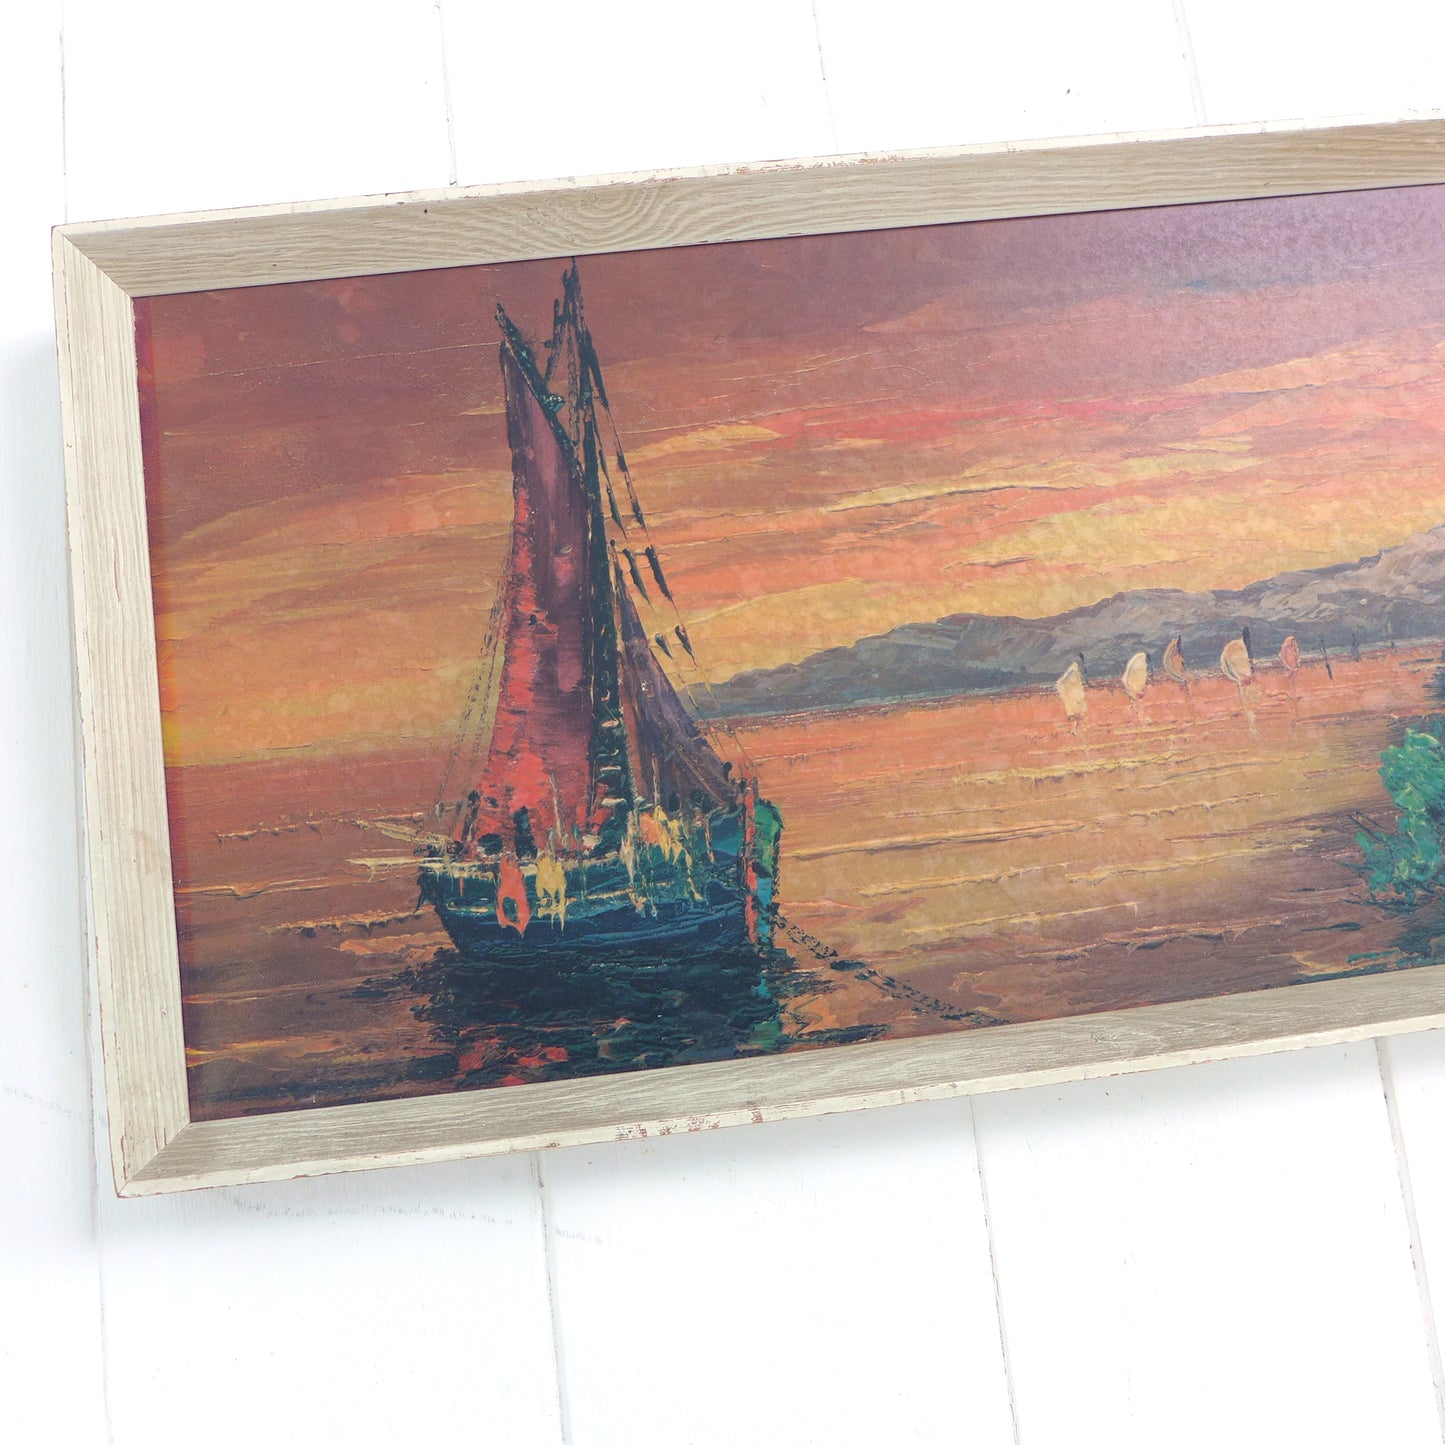 Mid Century Print 1960's Boats/Coastal Sunset Scene